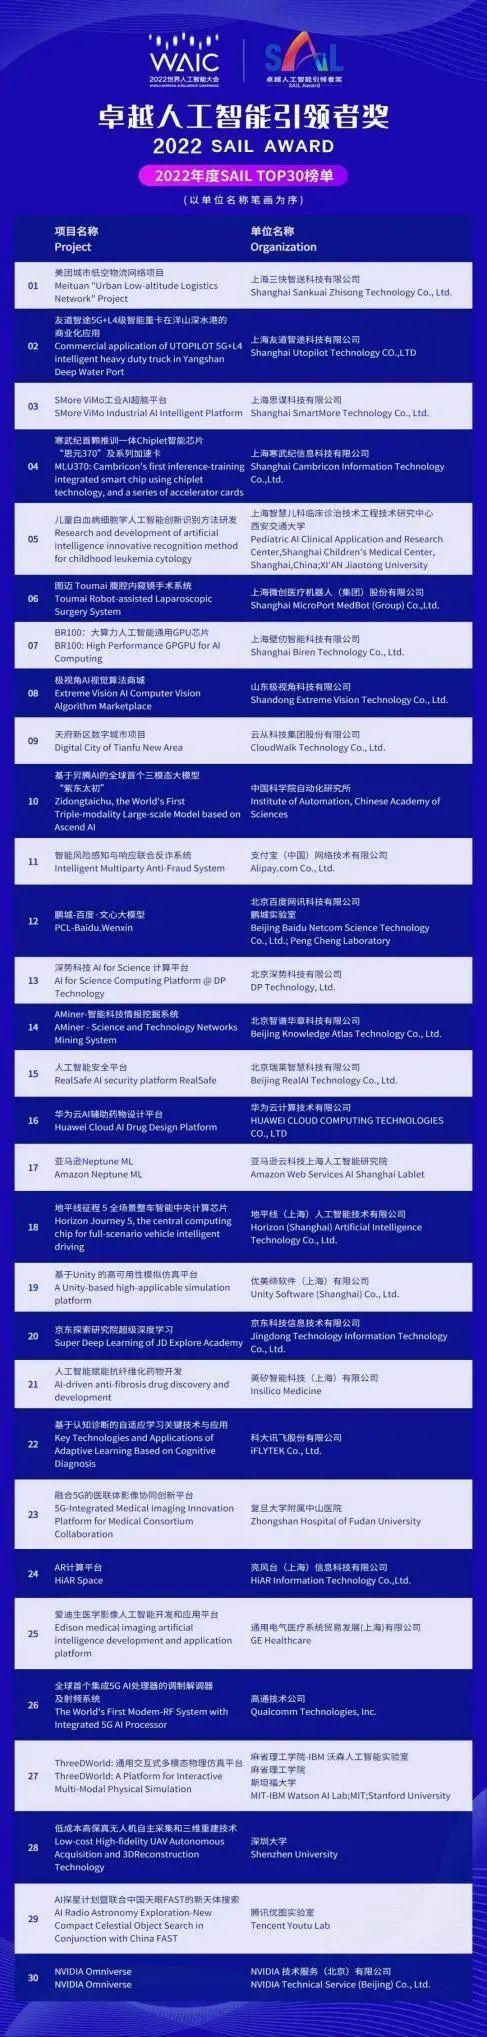 上海儿童医学中心智慧医疗项目入围人工智能大会SAIL奖TOP30榜单